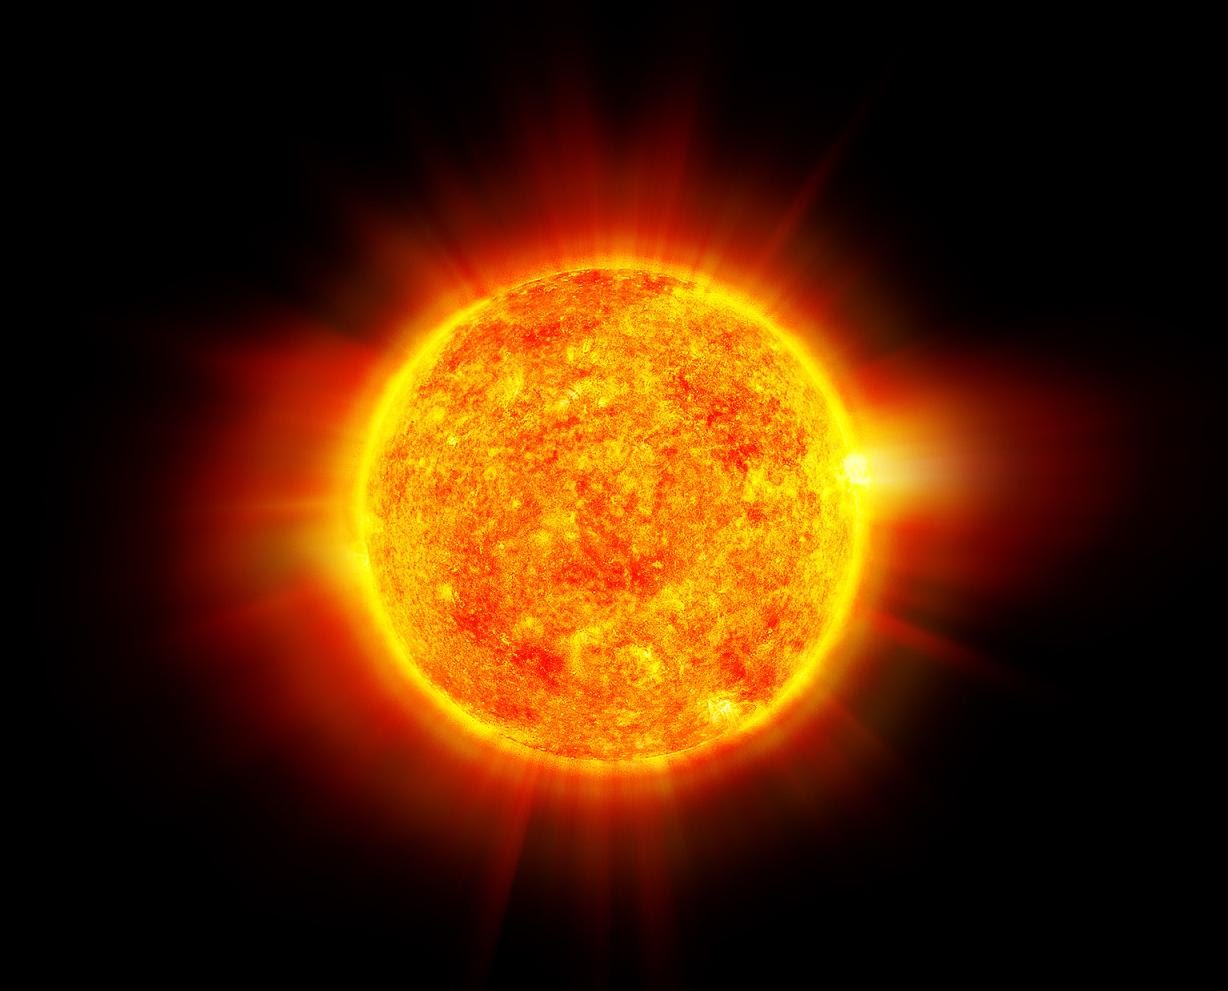 28.02.2015 15:00. “Солнце — ближайшая звезда. Задачи.” (очередное открытое занятие по астрономии в Ижевске)